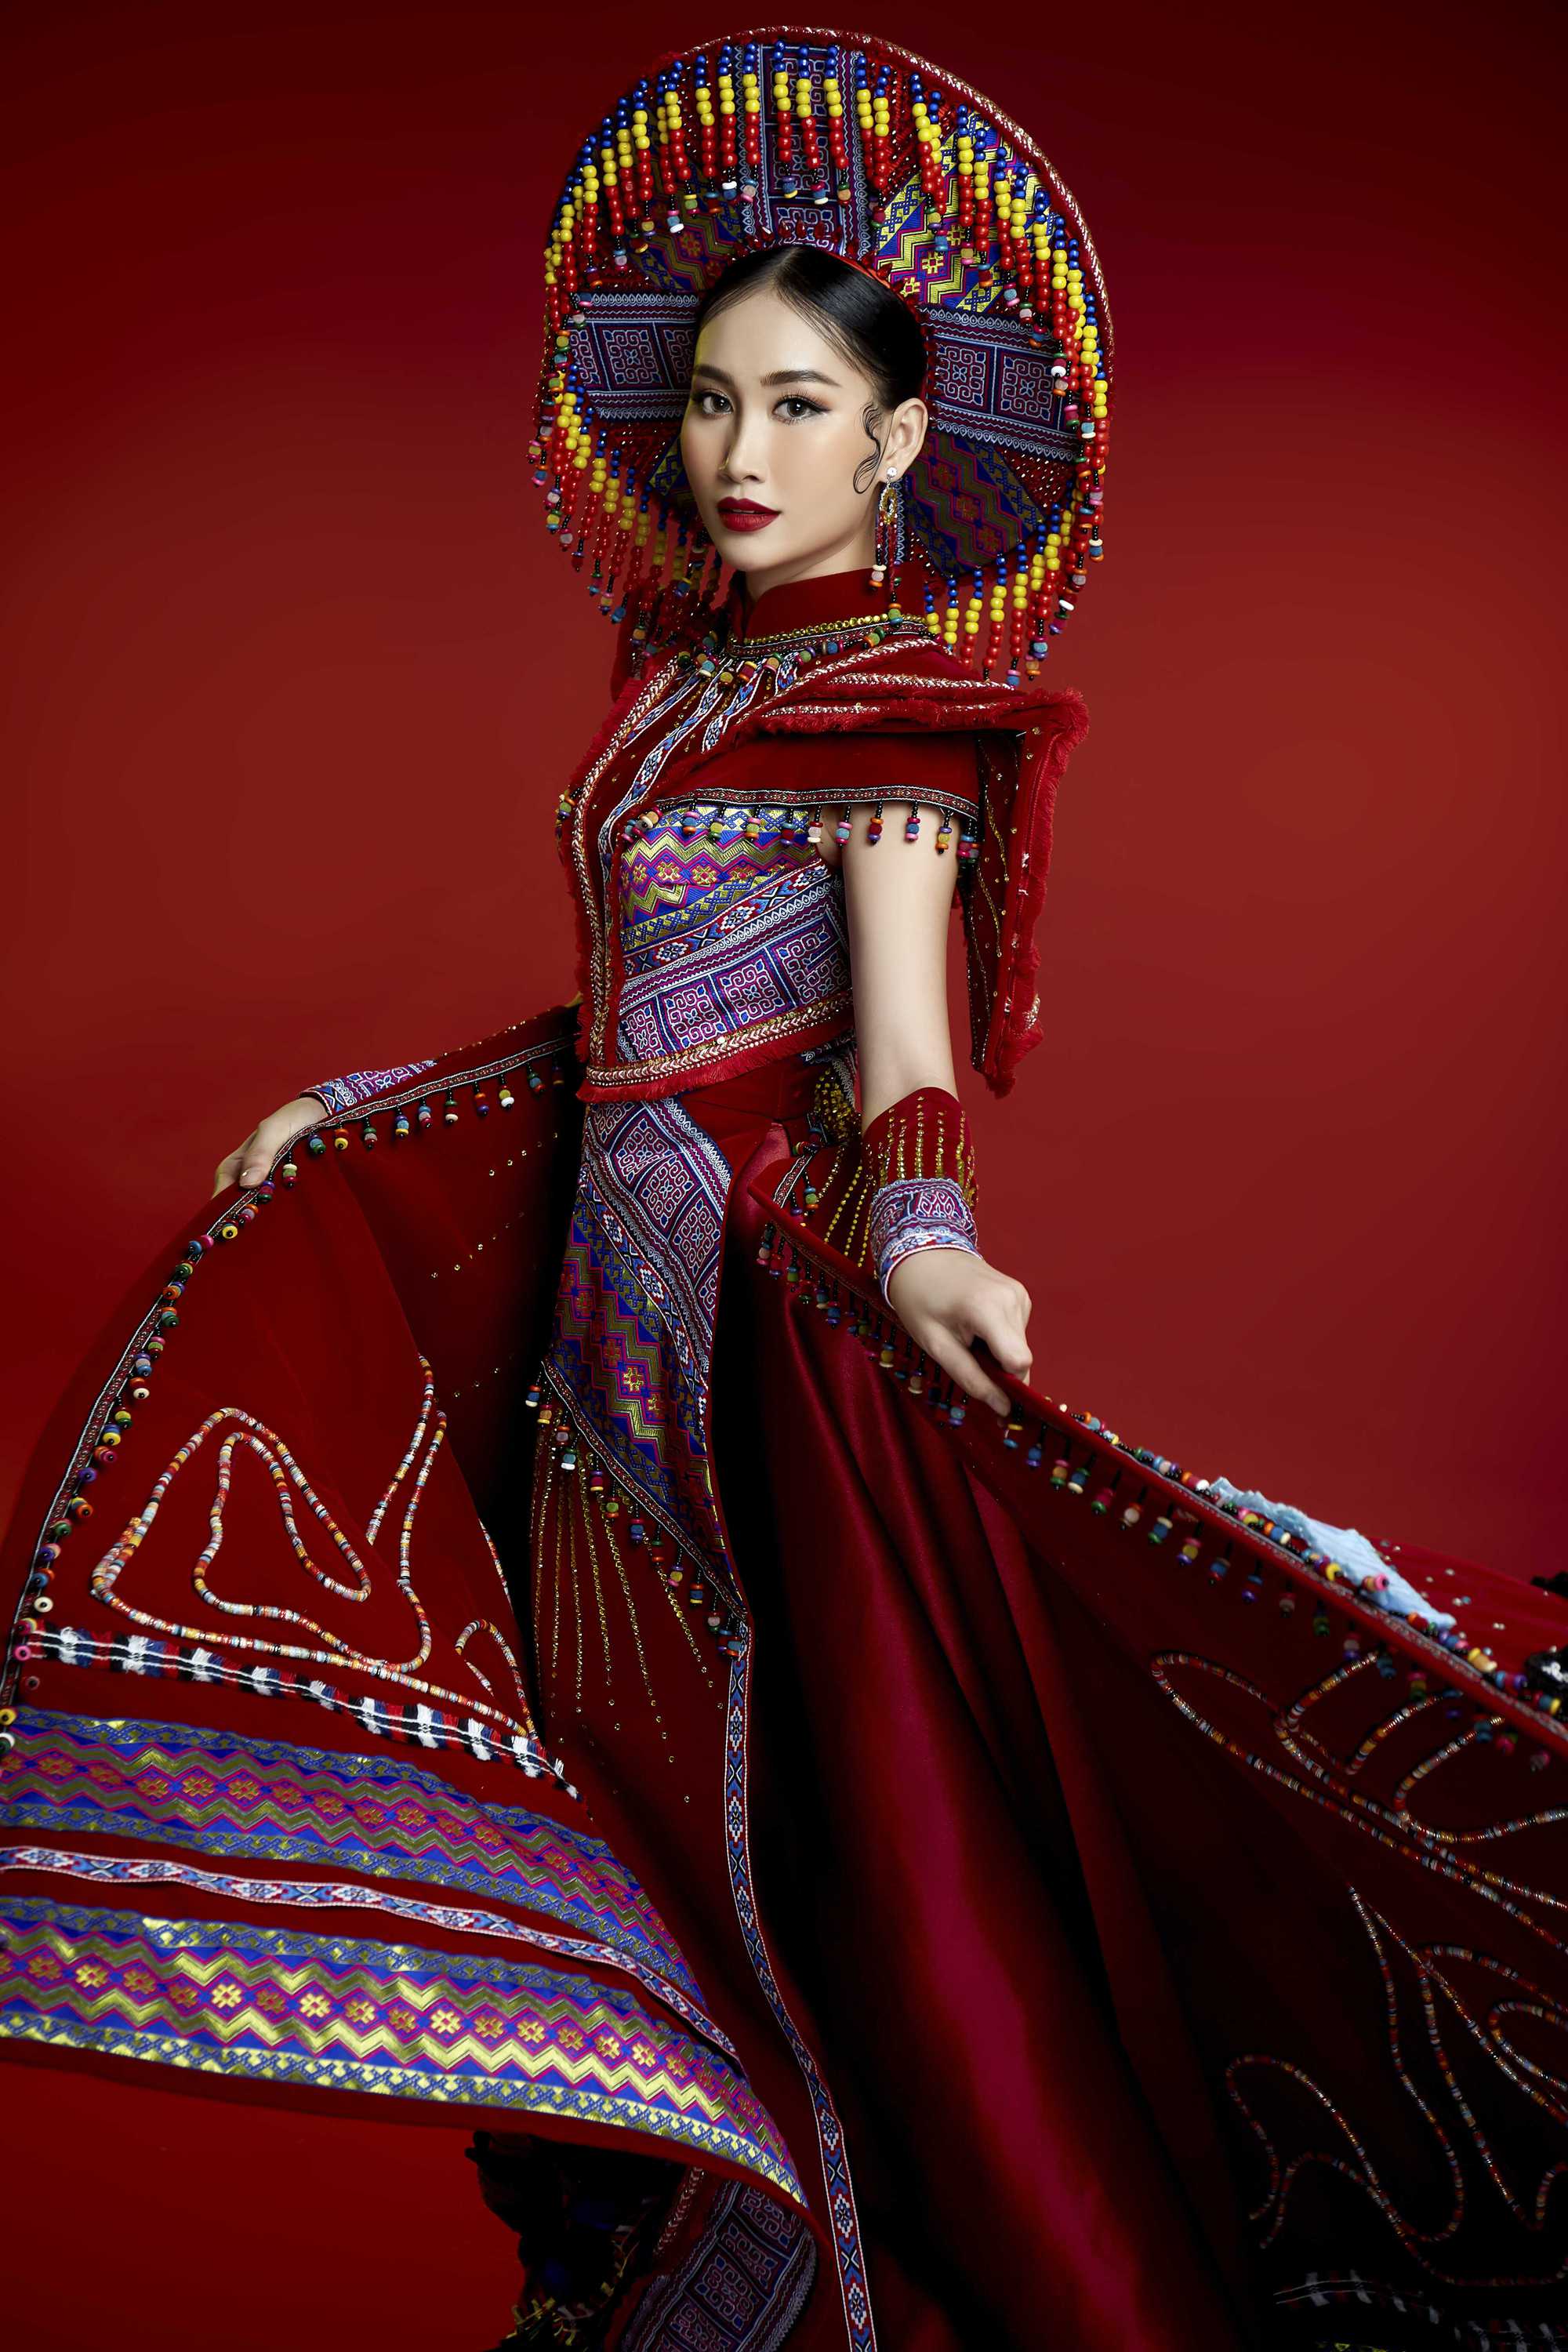 Trang phục dân tộc là một phần không thể thiếu trong bức tranh đa dạng của văn hoá Việt Nam. Được thiết kế tỉ mỉ theo từng chi tiết, trang phục này sẽ mang đến cho bạn sự hoàn hảo để khám phá và tìm hiểu thêm về nền văn hoá độc đáo của dân tộc.